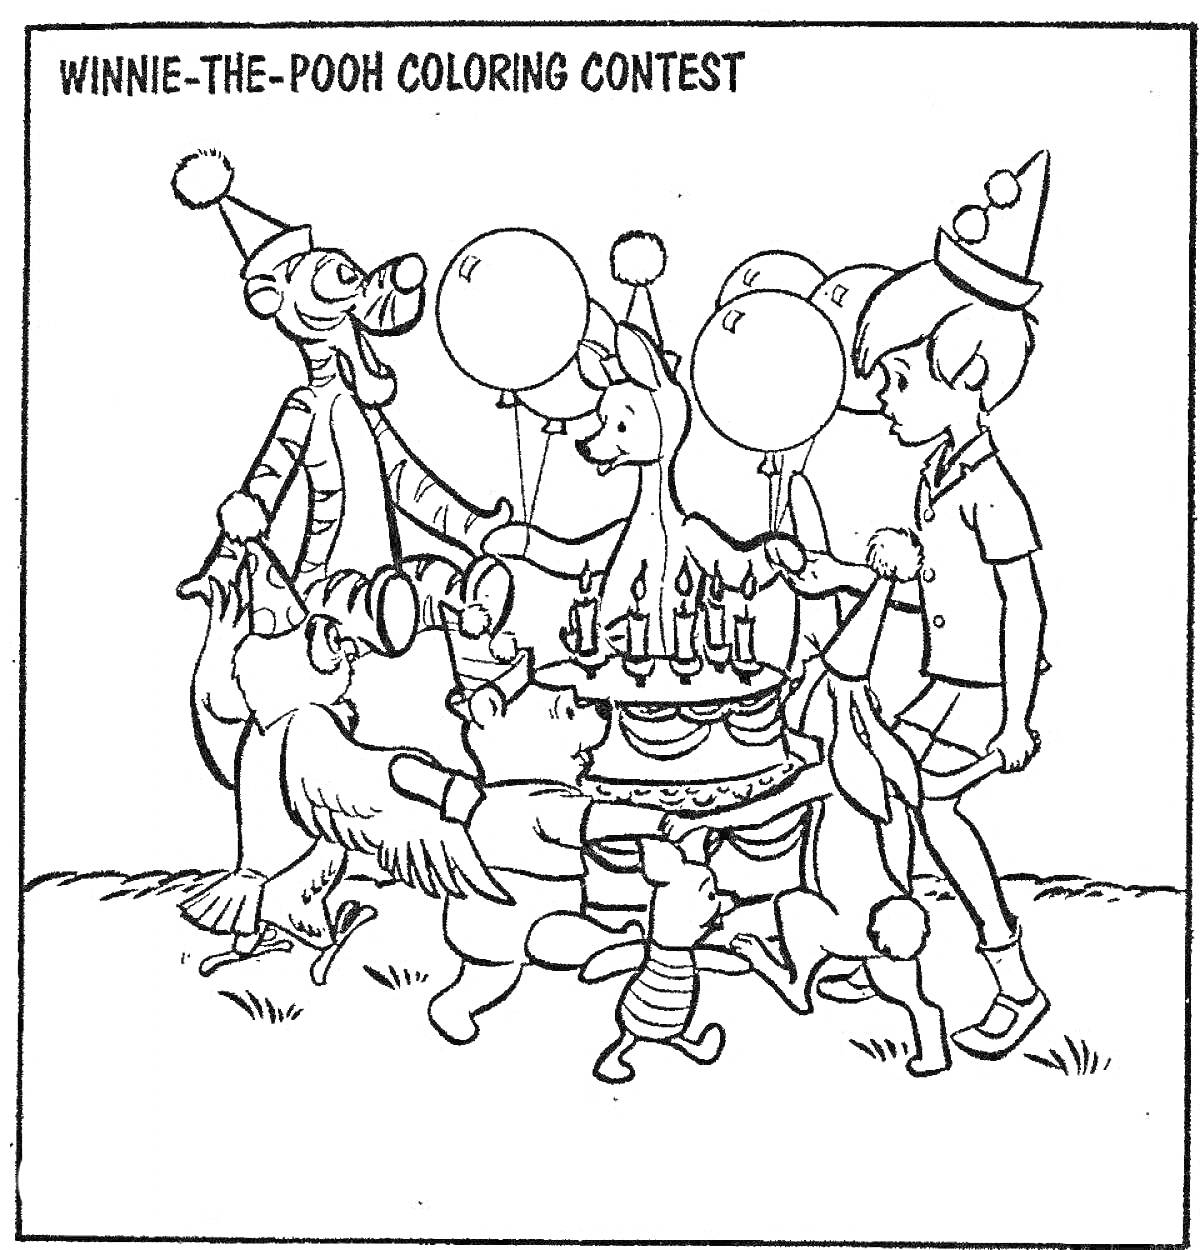 Хоровод вокруг праздничного торта с Винни-Пухом, Тигрулей, Кенгой, Кроликом и мальчиком